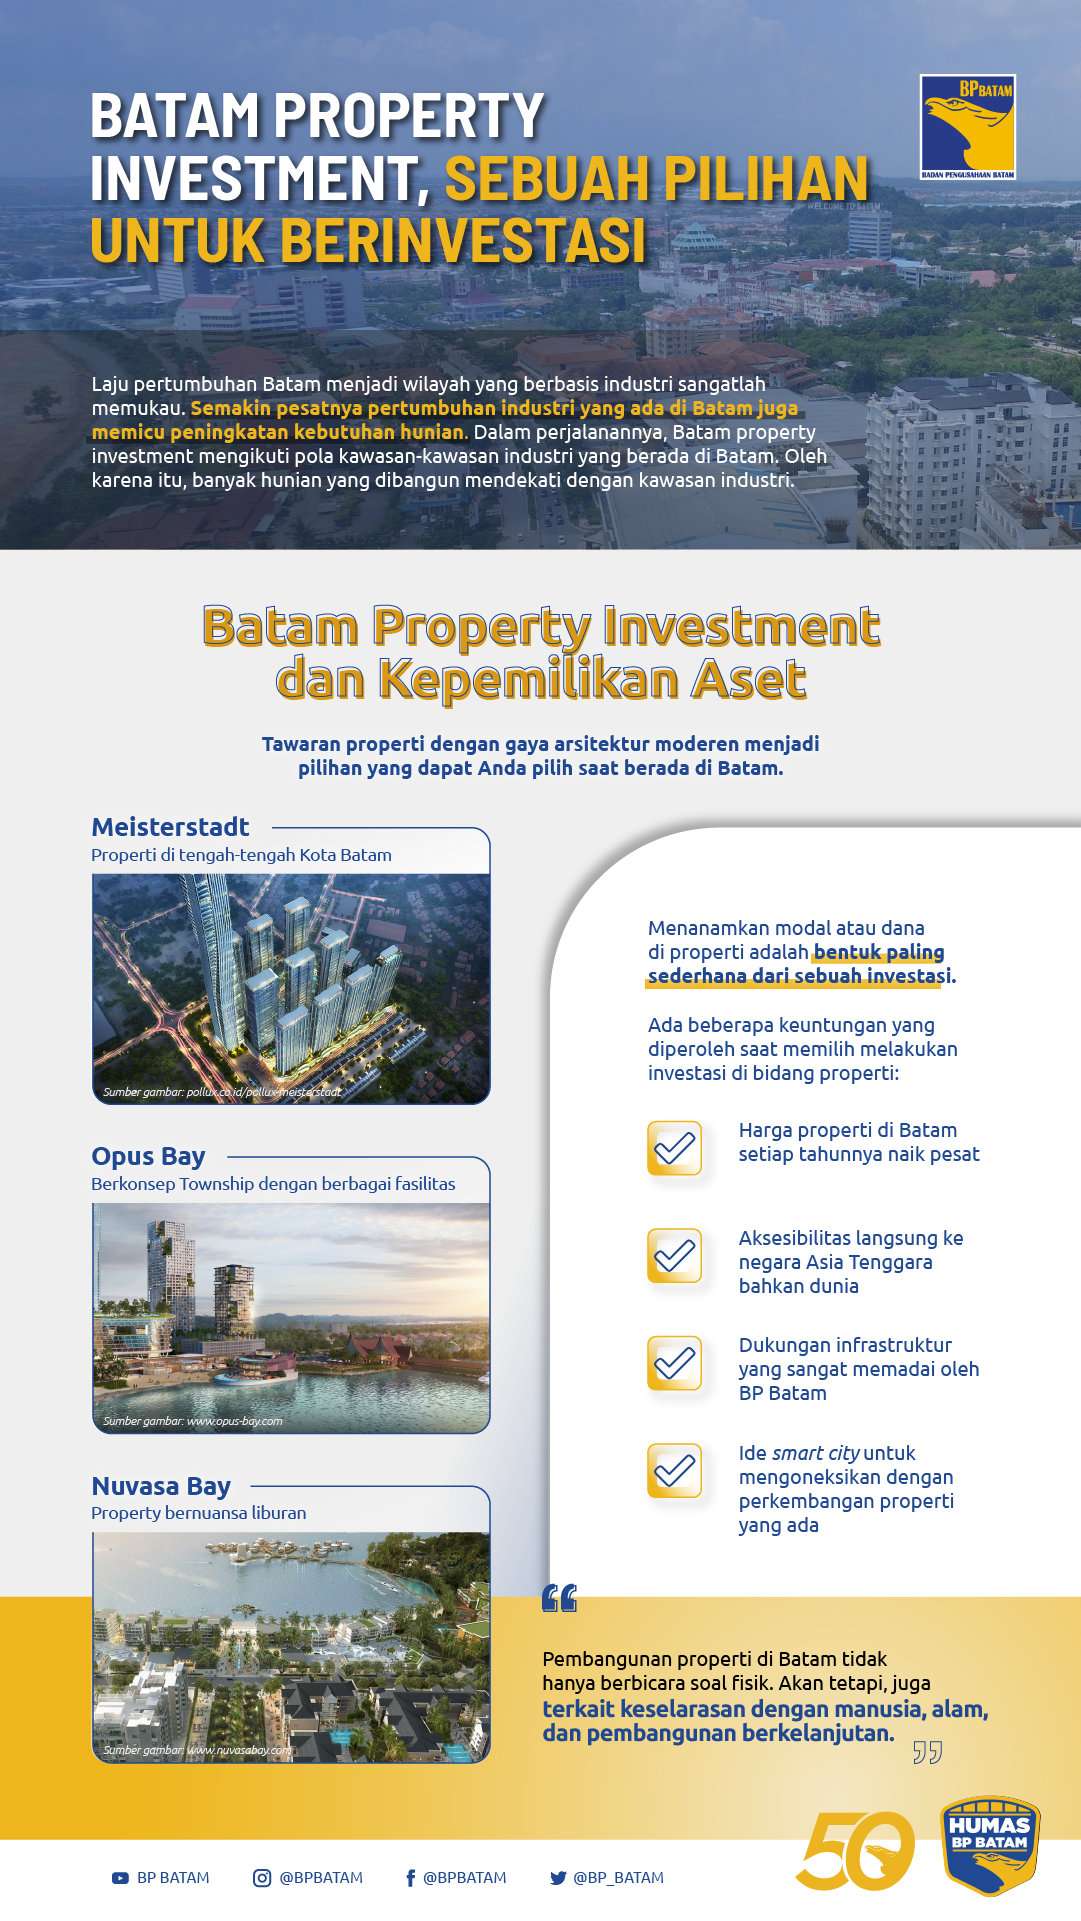 Batam Property Investment, Sebuah Pilihan untuk Berinvestasi